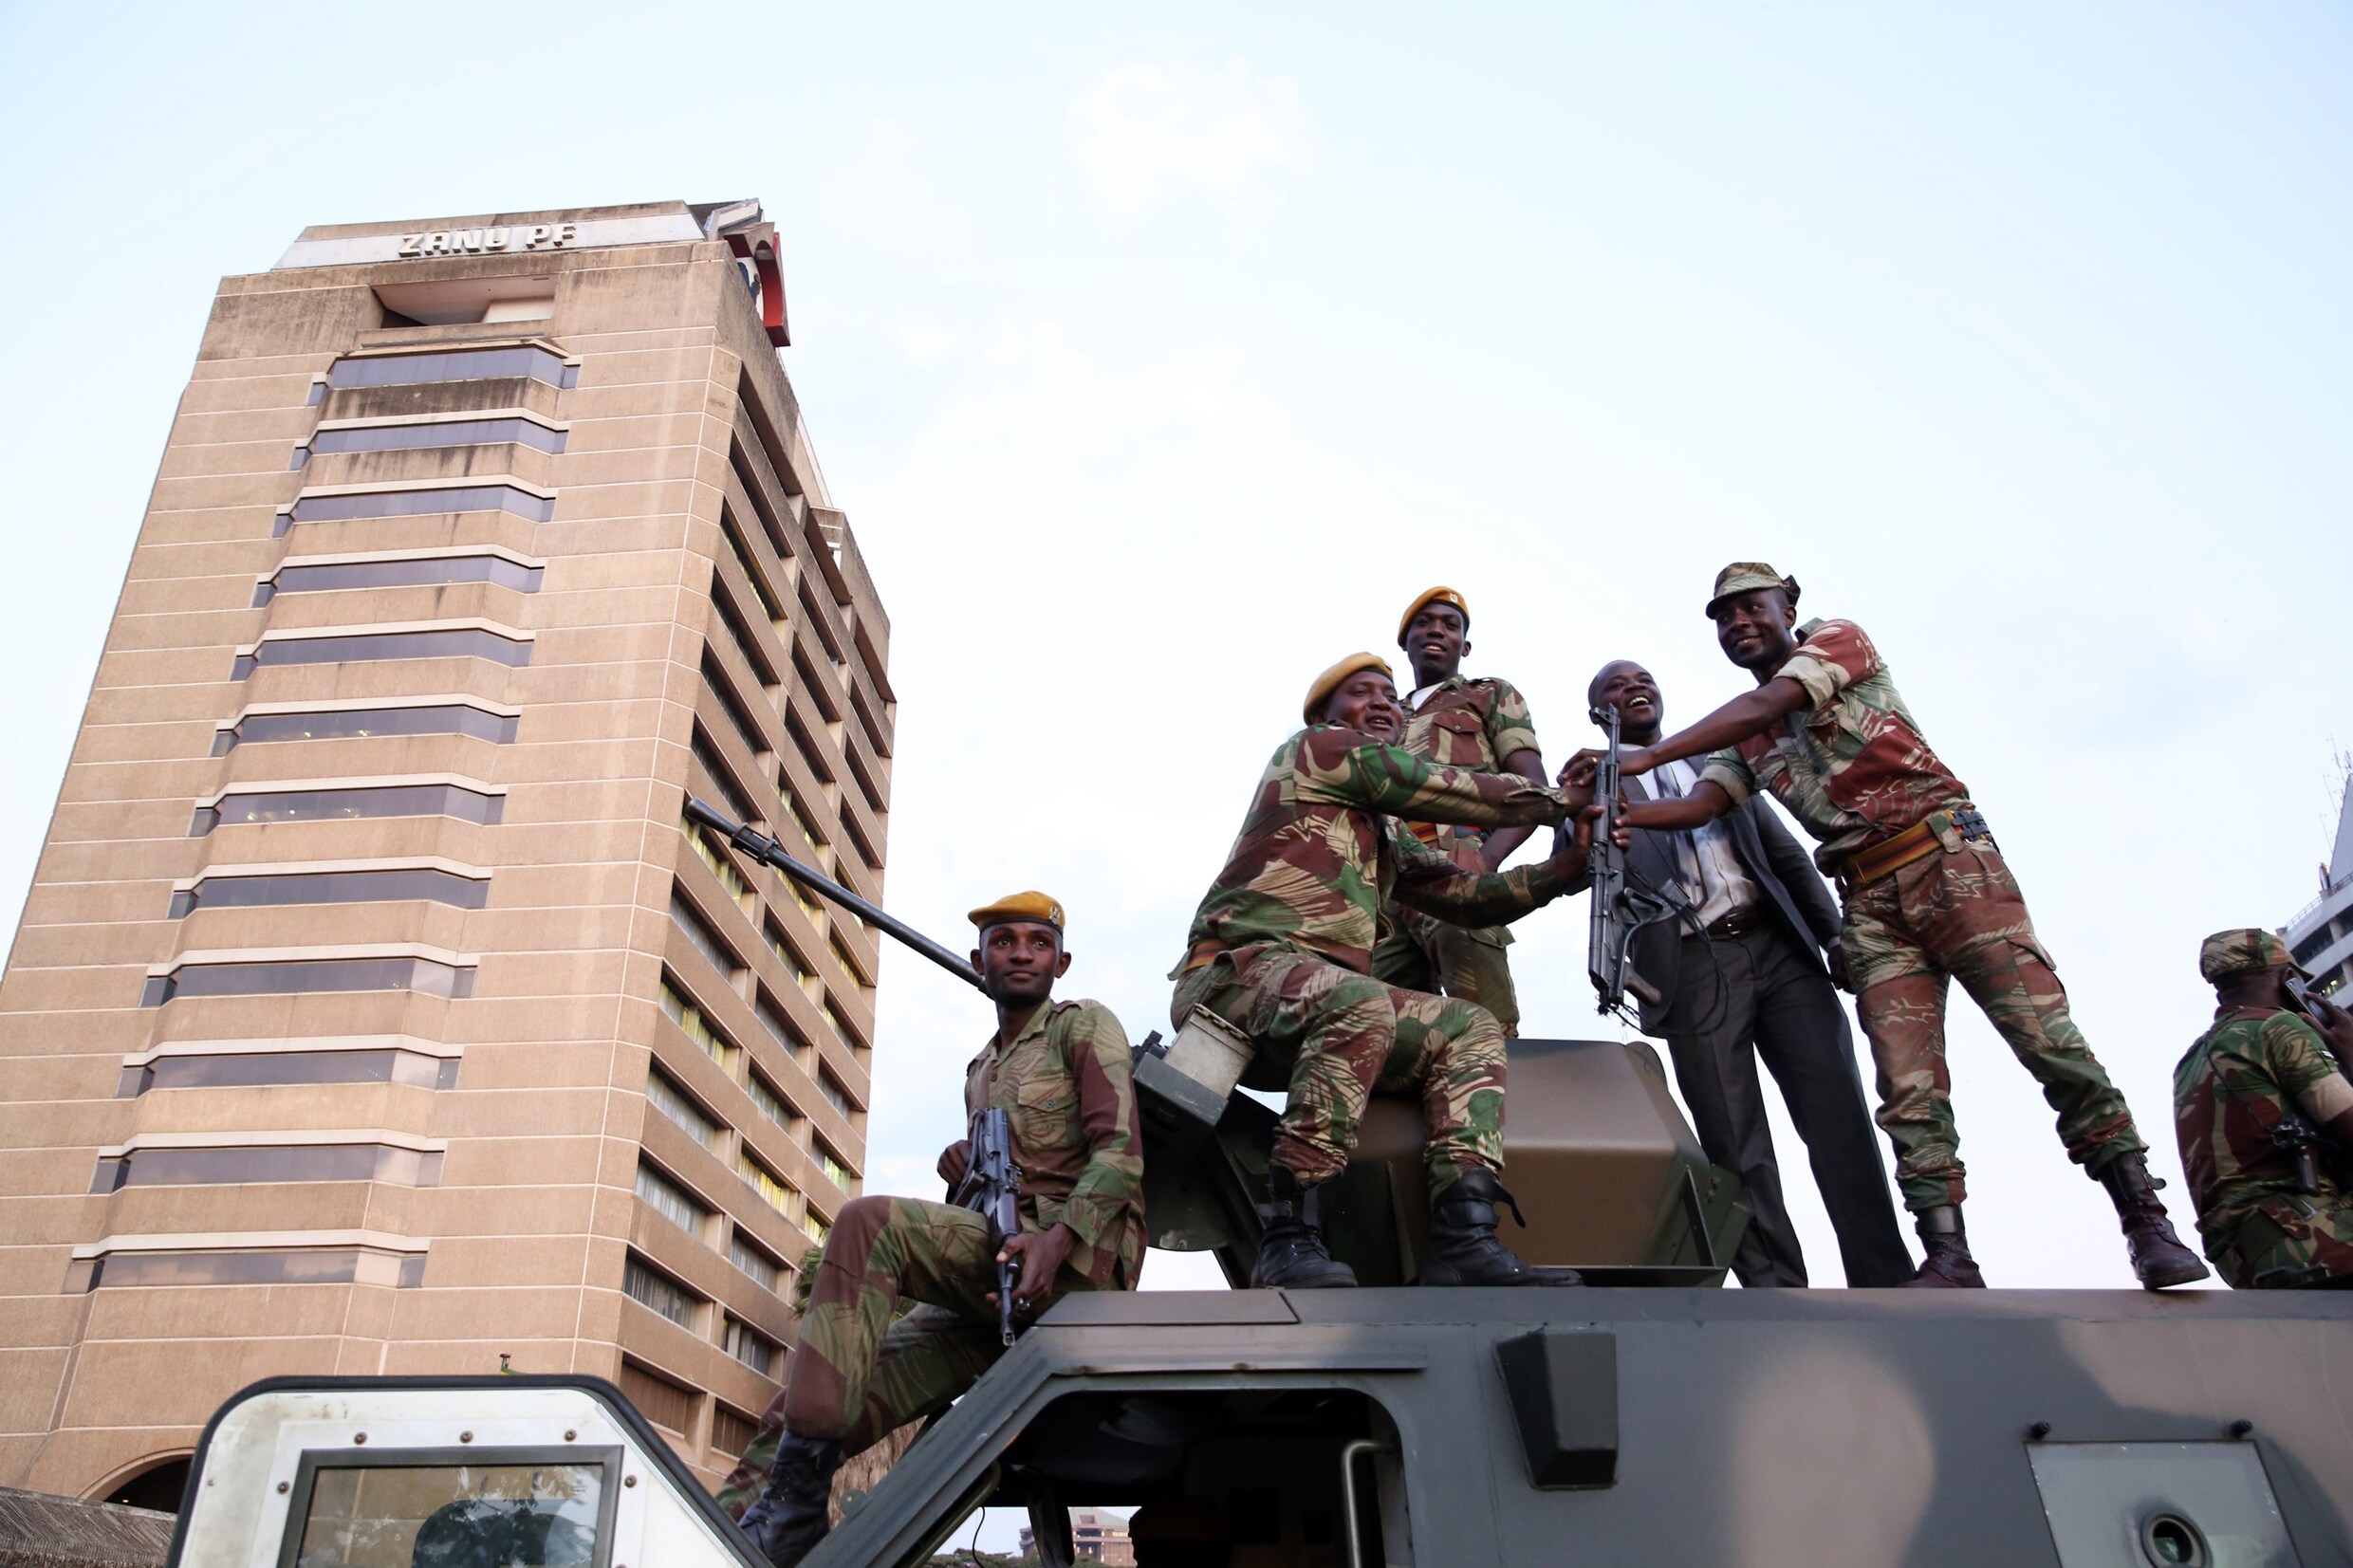 Uitspraak dat leger de macht niet zal afstaan leidt tot ophef in Zimbabwe